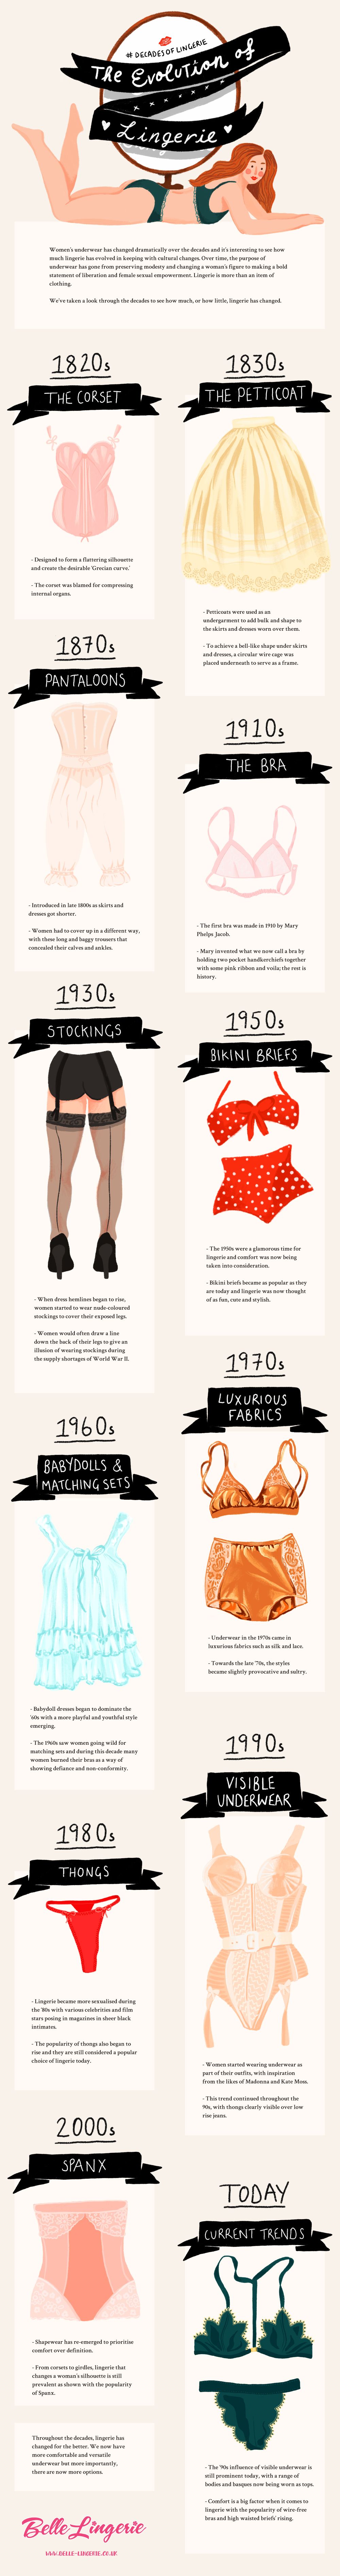 Evolution Of Womens Underwear